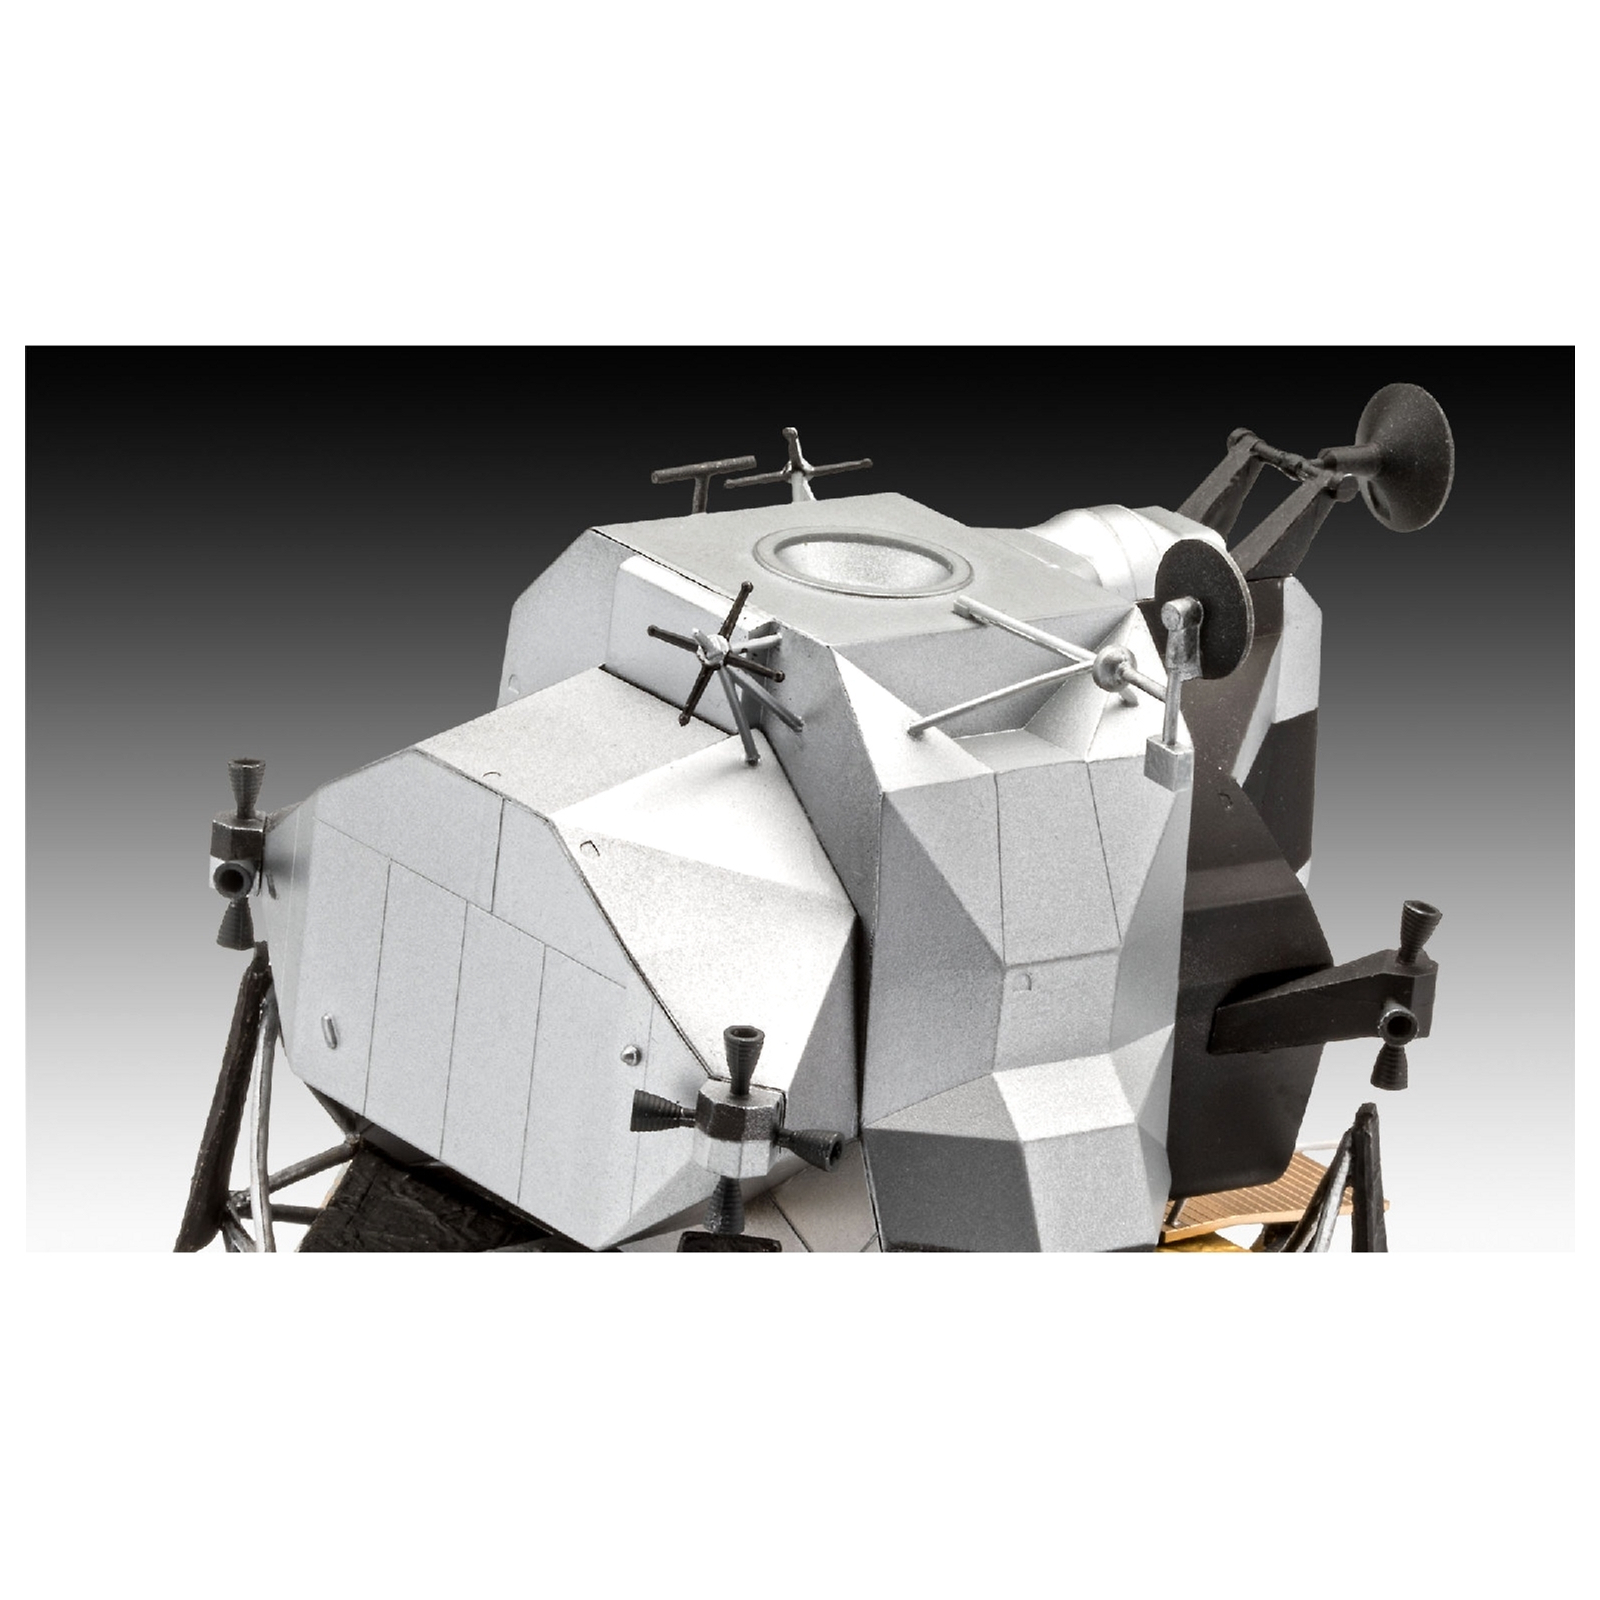 Сборная модель Revell Лунный модуль Орел миссии Аполлон 11 уровень 4, 1:48 (RVL-03701) изображение 5